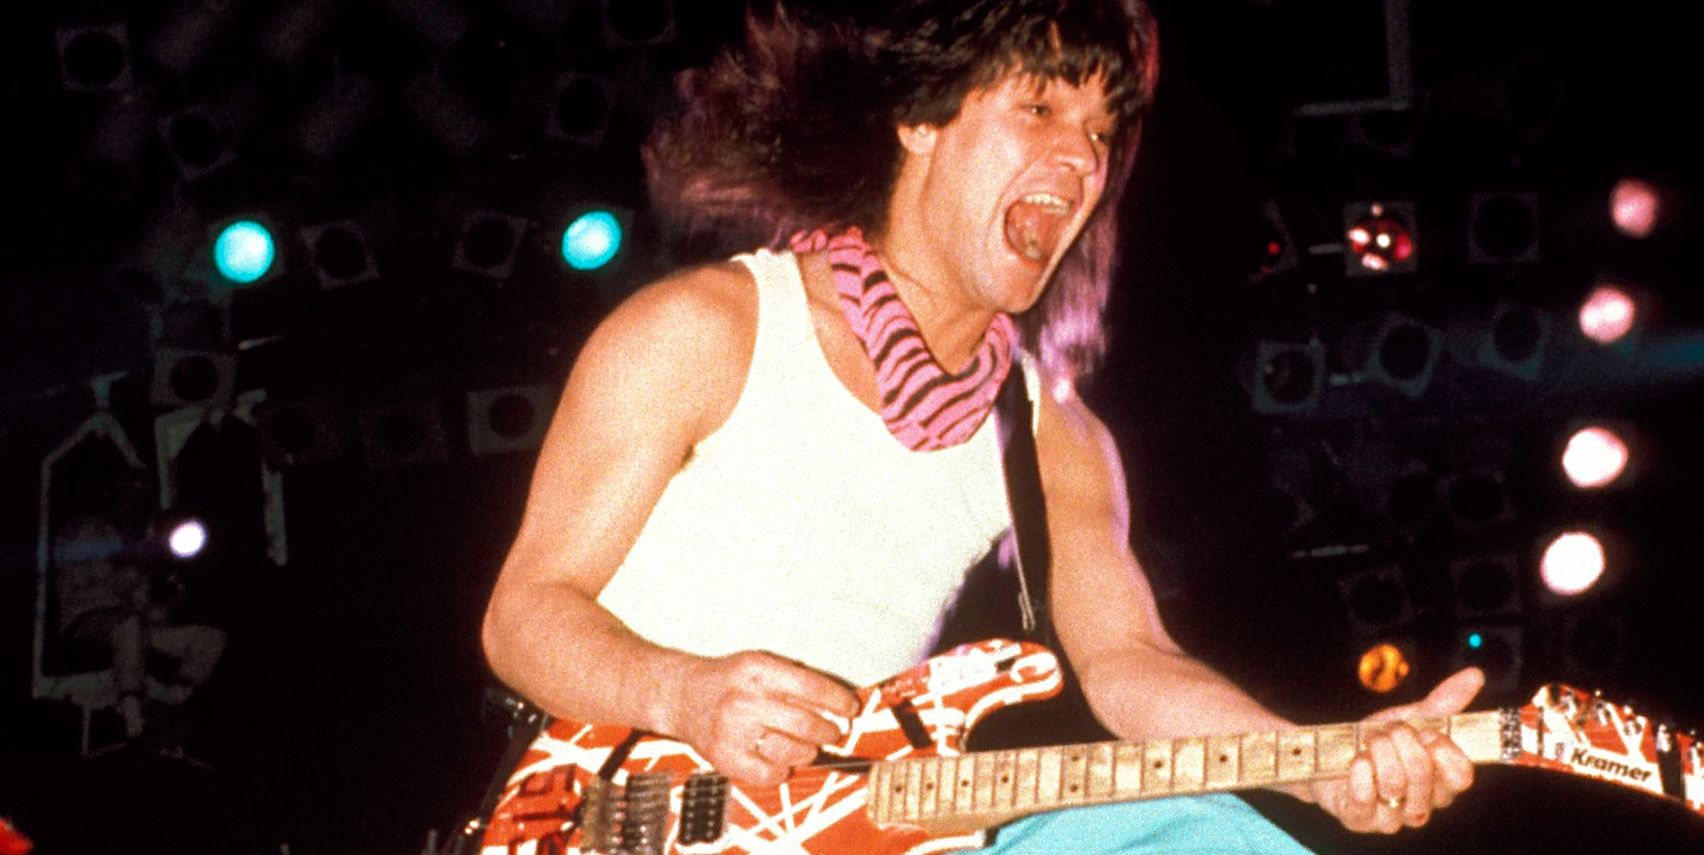 Van Halen on stage with guitar